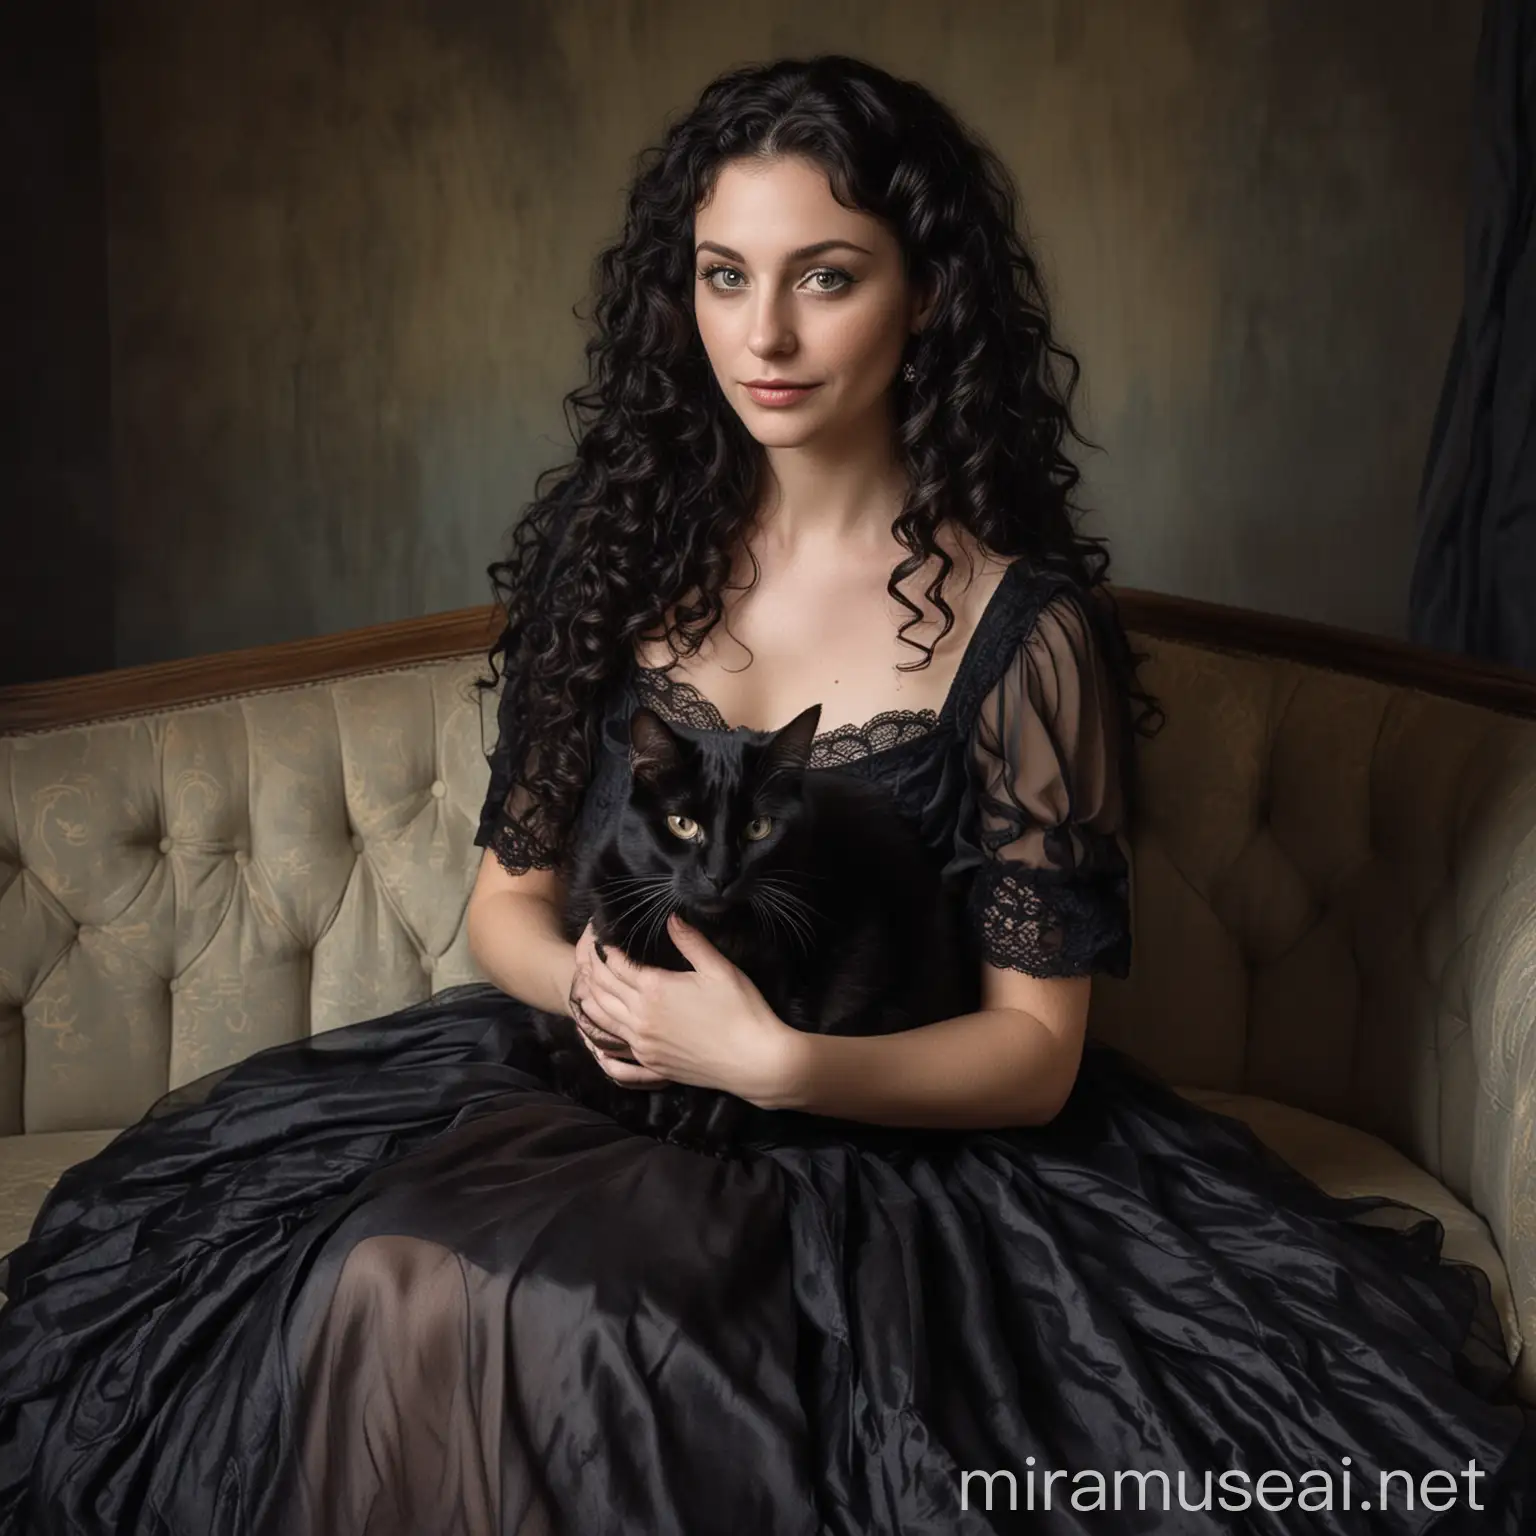 Tridesetogodišnja žena, duge crne i kovrčave kose, svijetle puti, tamna šminka, u haljini, u krilu joj sjedi crni mačak